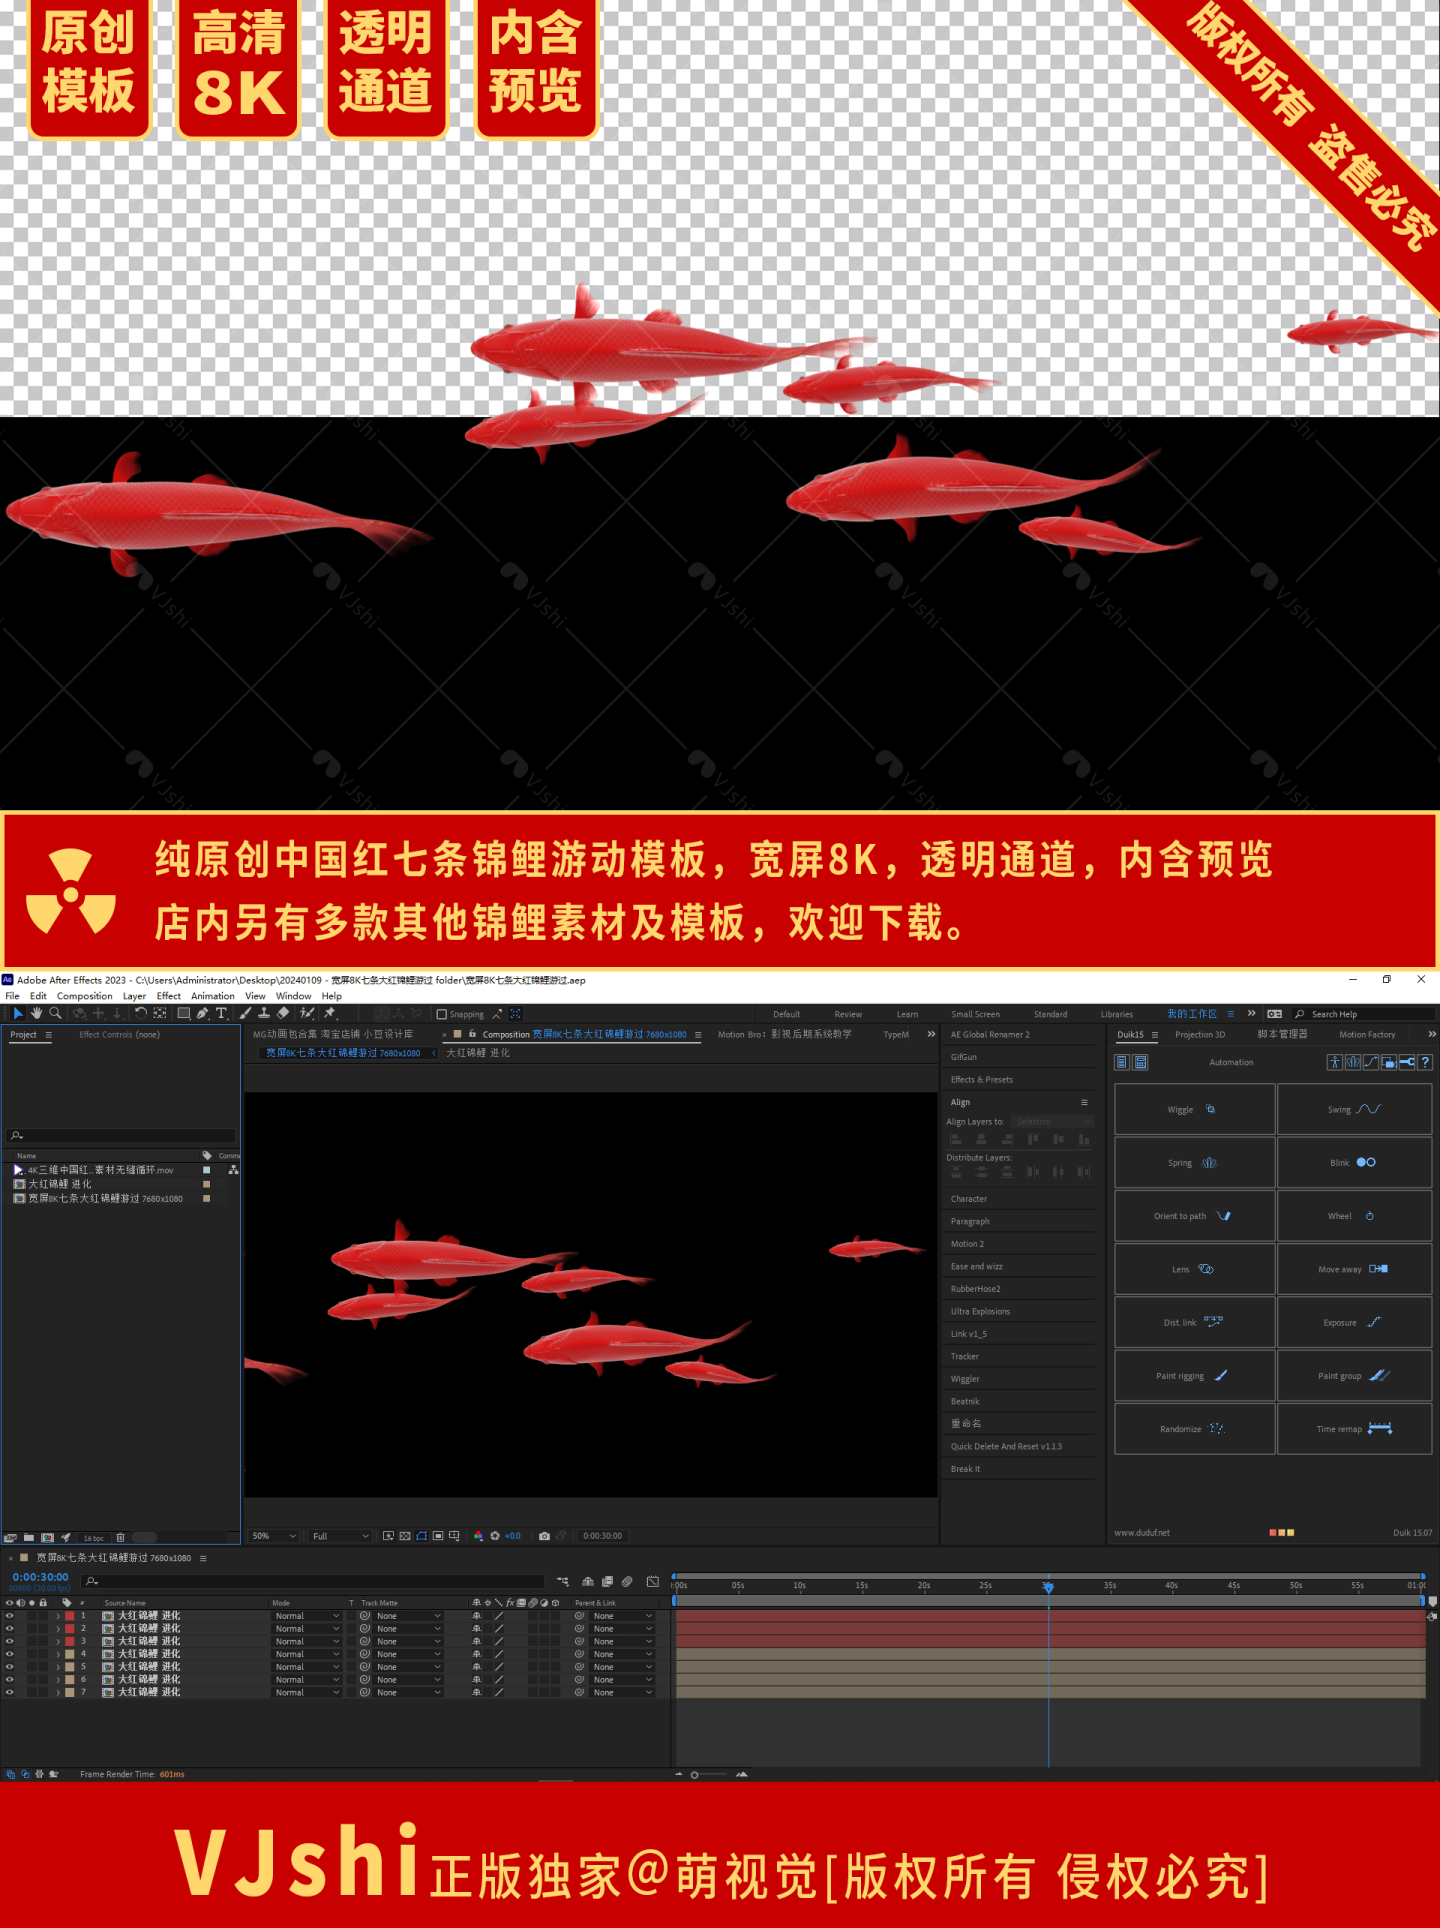 宽屏8K七条大红锦鲤鱼群游过模板